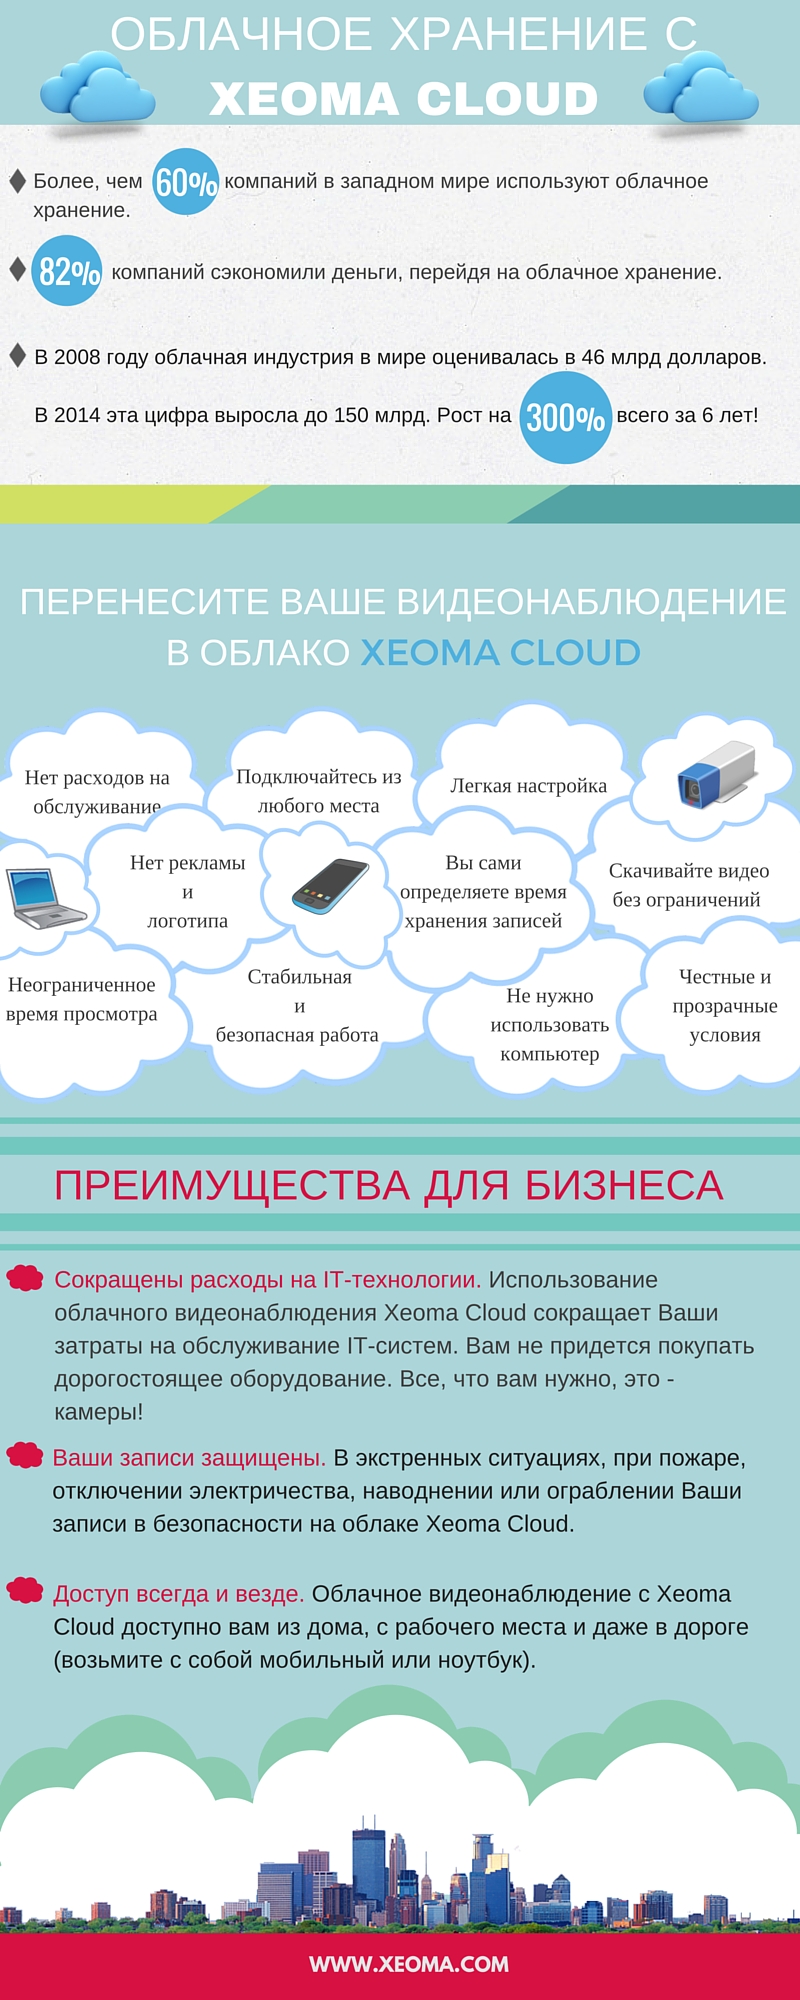 Облачное хранилище Xeoma Cloud для Вашего видеонаблюдения